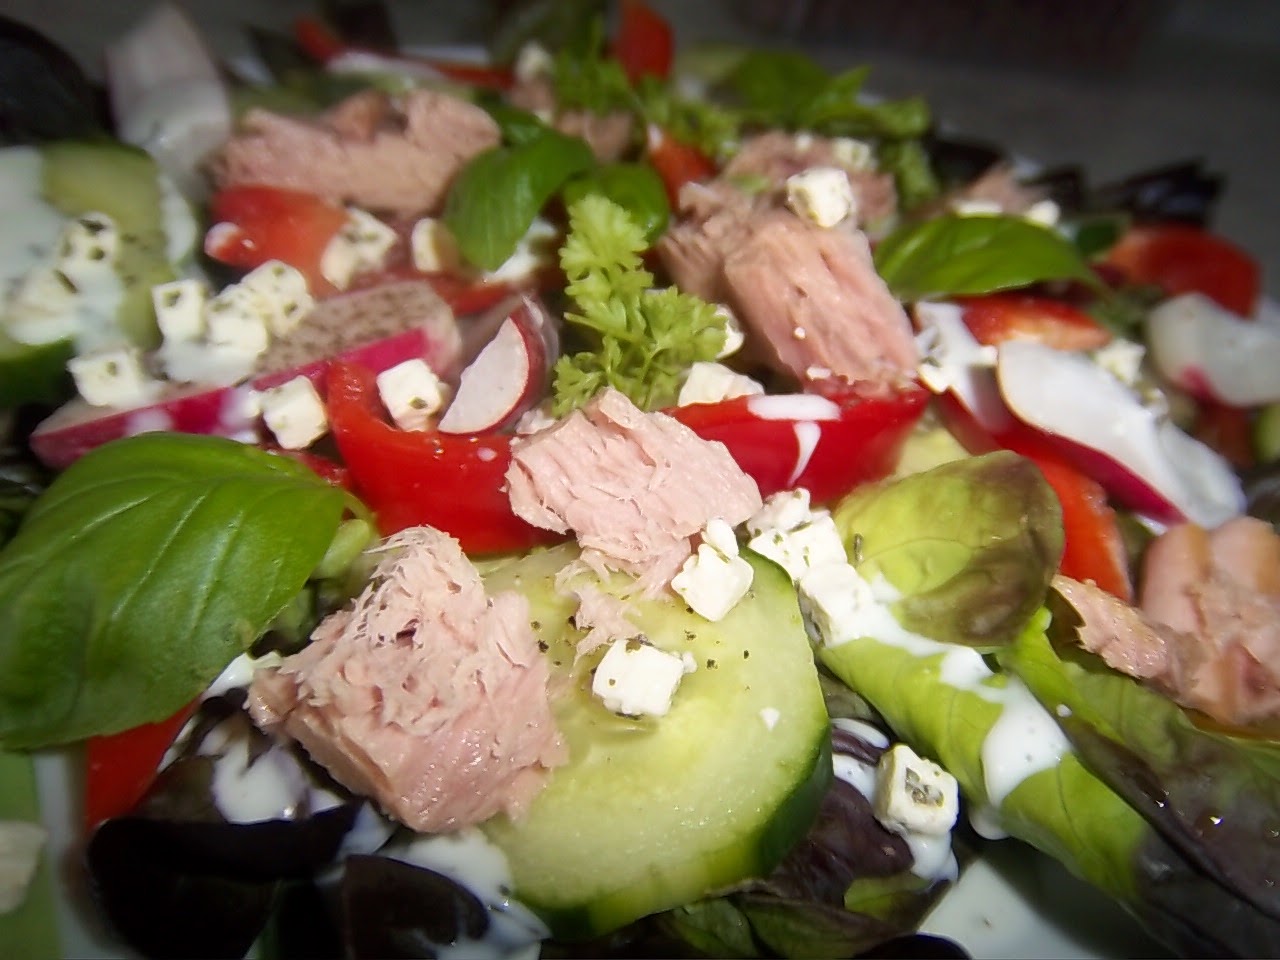 Bunter Salat mit Thunfisch und Joghurt Dressing